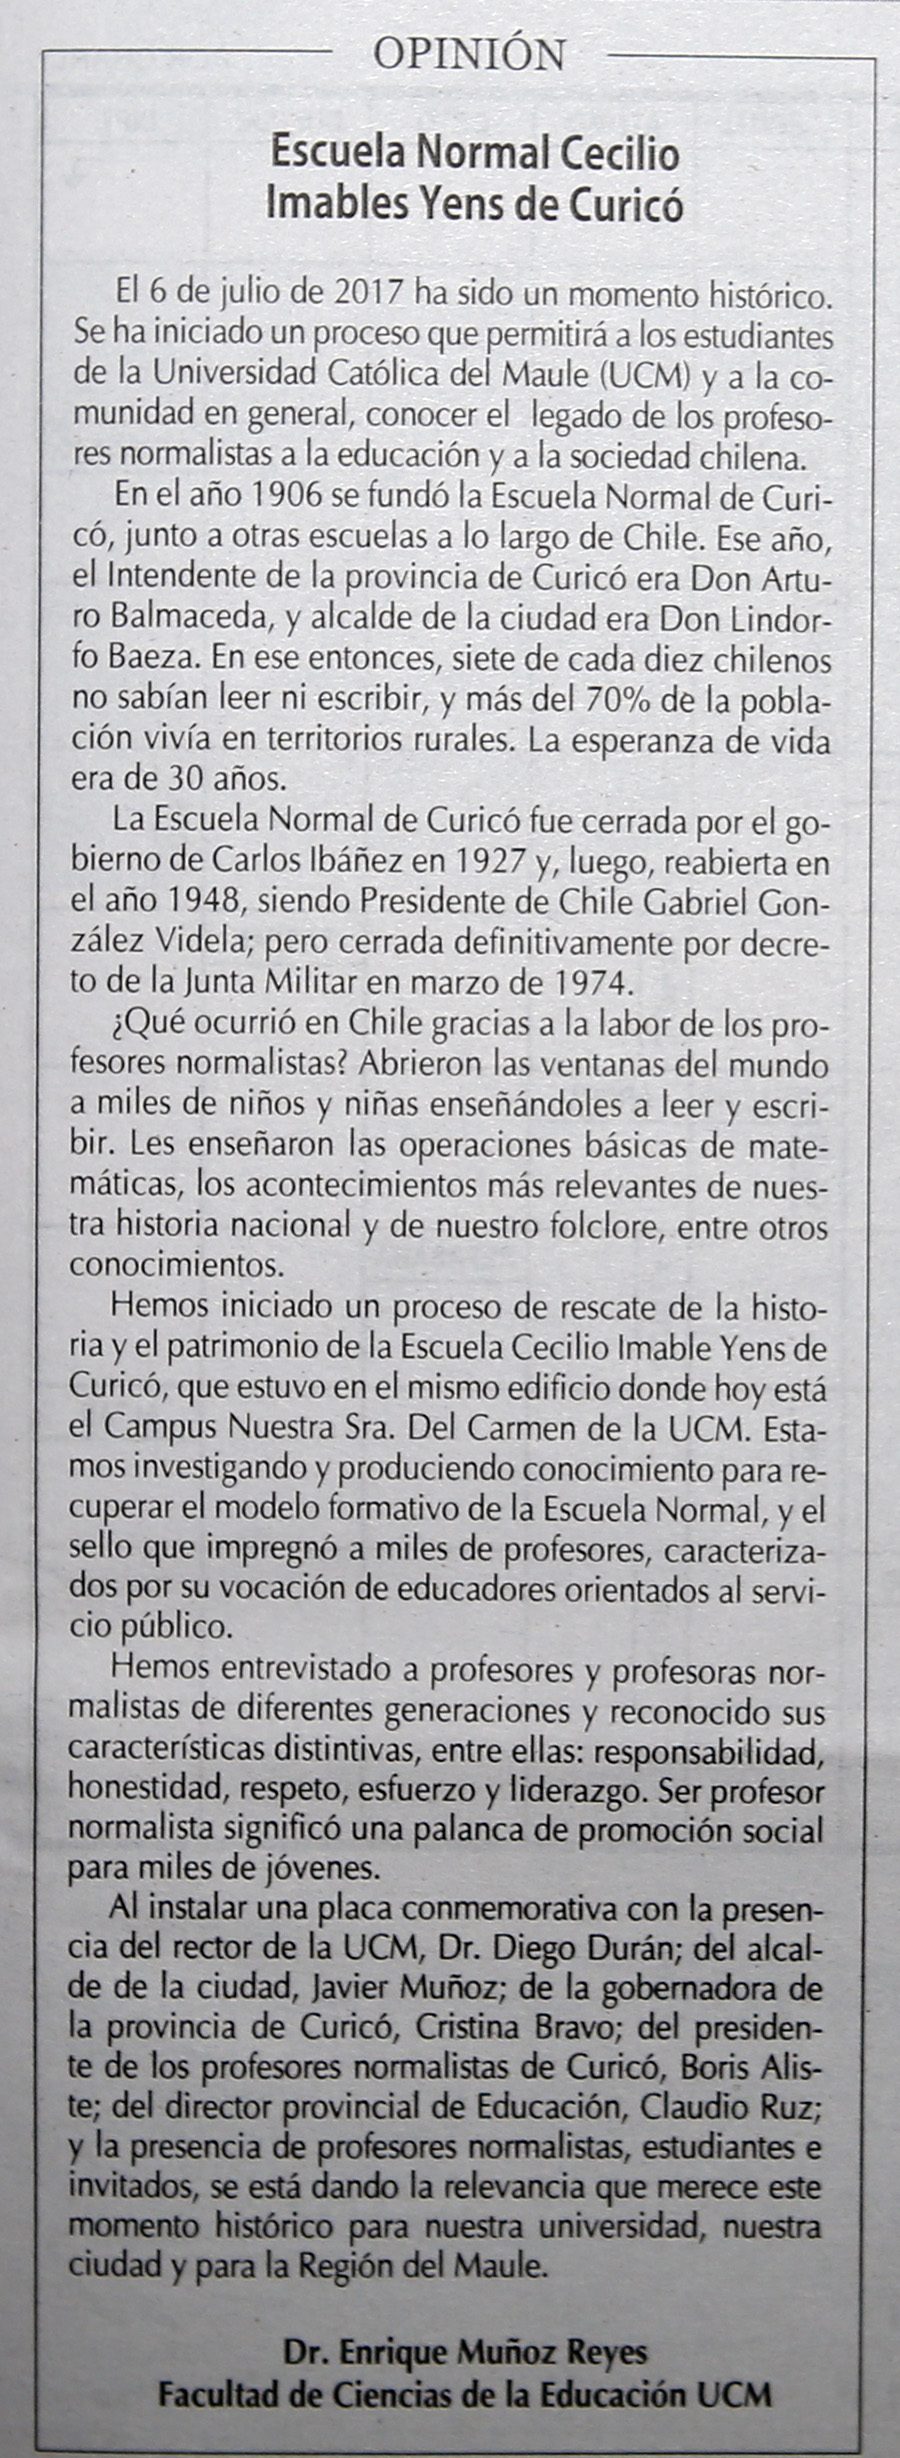 17 de julio en Diario El Centro: “Escuela Normal Cecilio Imables Yens de Curicó”